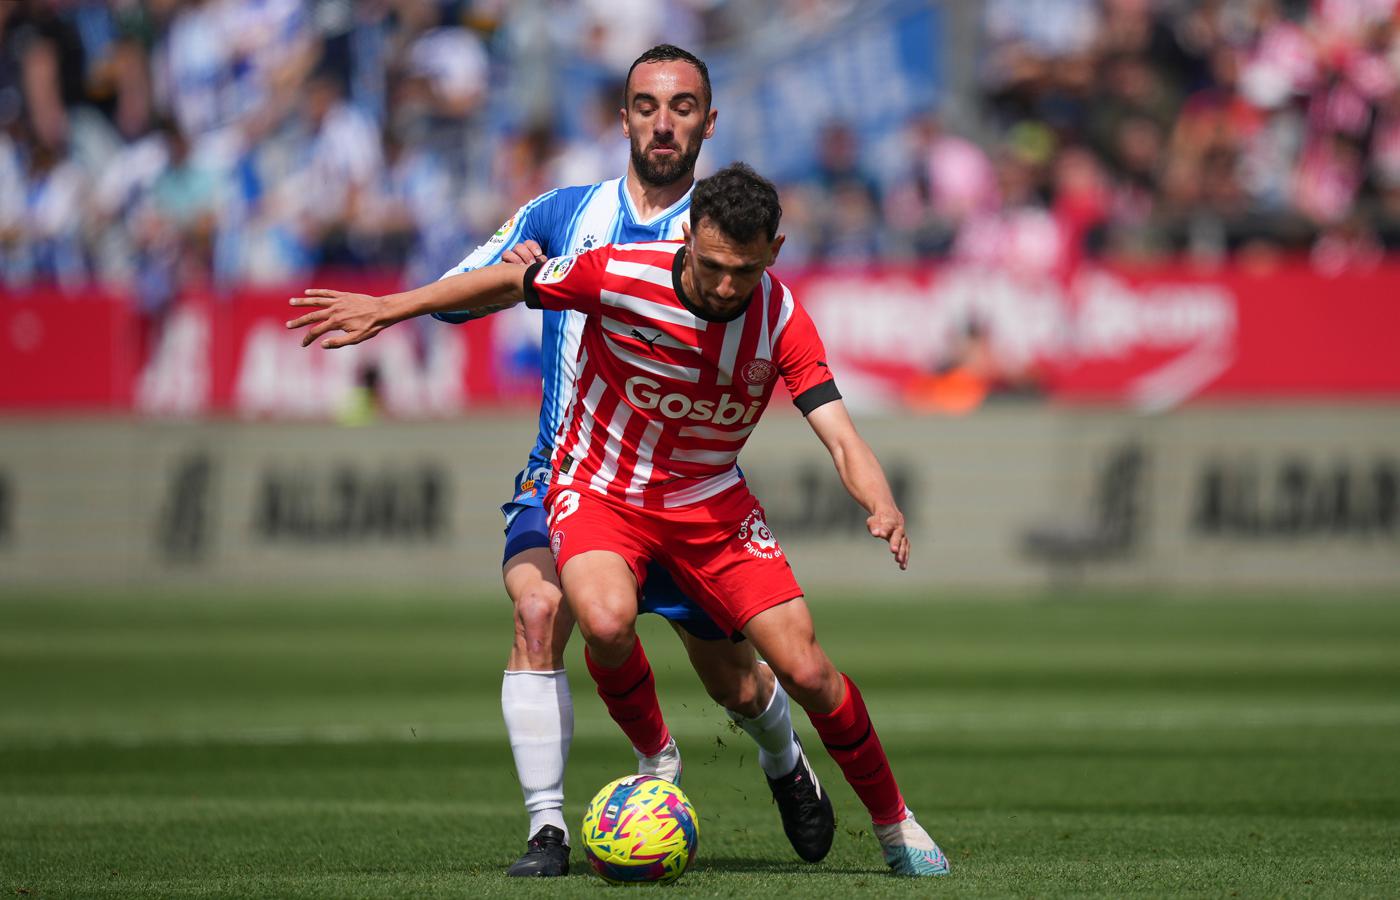 Girona - Espanyol - 2:1. Spanish Championship, 27th round. Match review, statistics